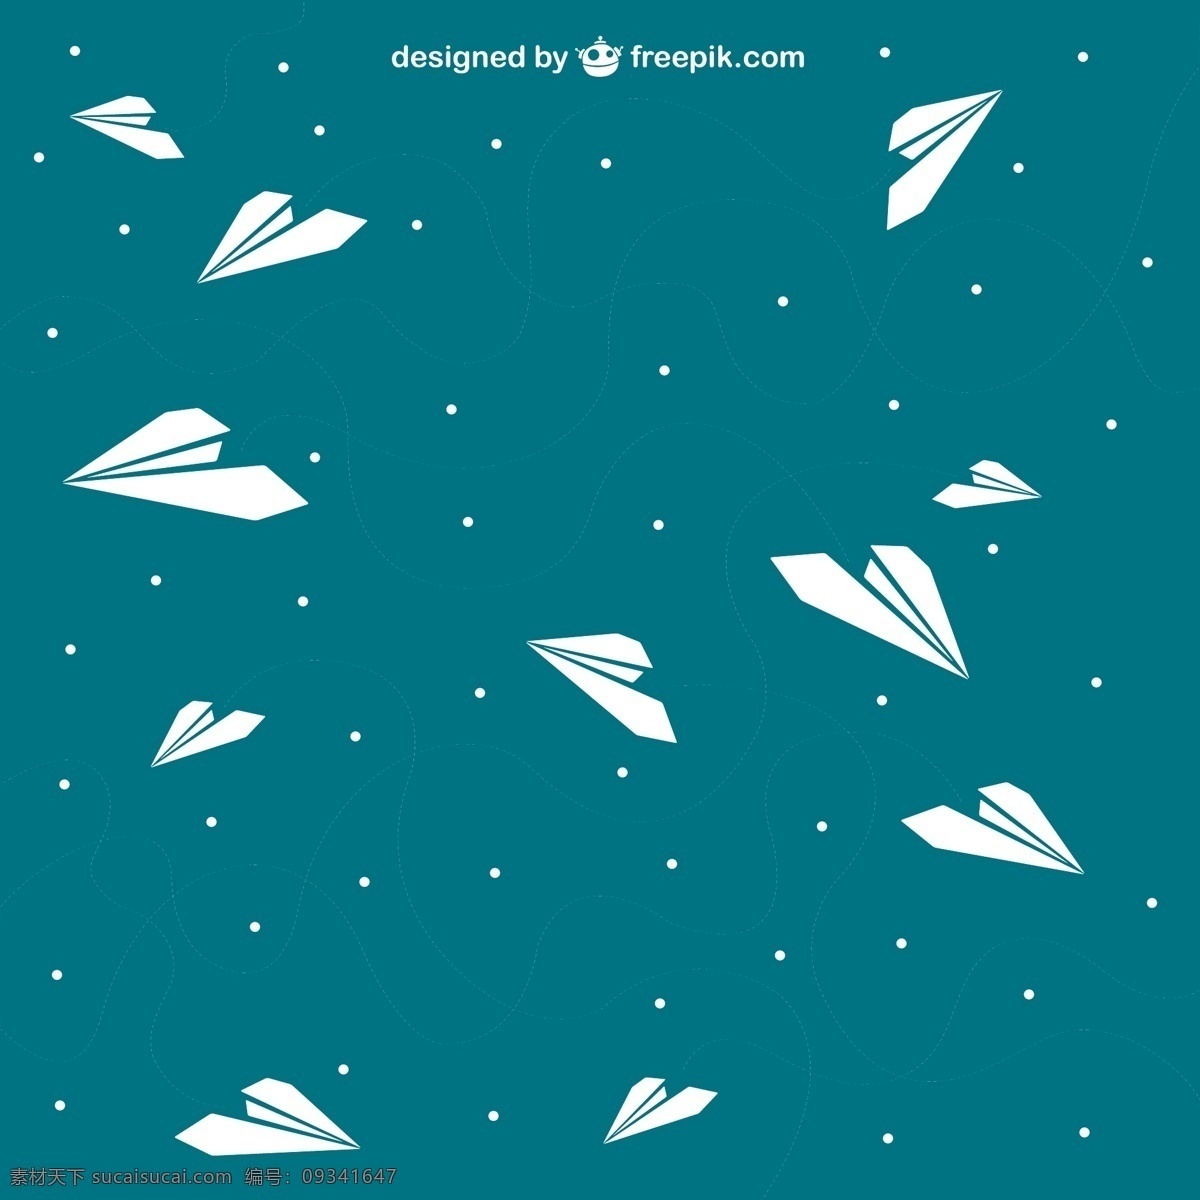 纸飞机背景 飞机 飞机飞行 飞行 白云 简洁插画 天空 纸飞机 矢量图形 生活用品 生活百科 矢量